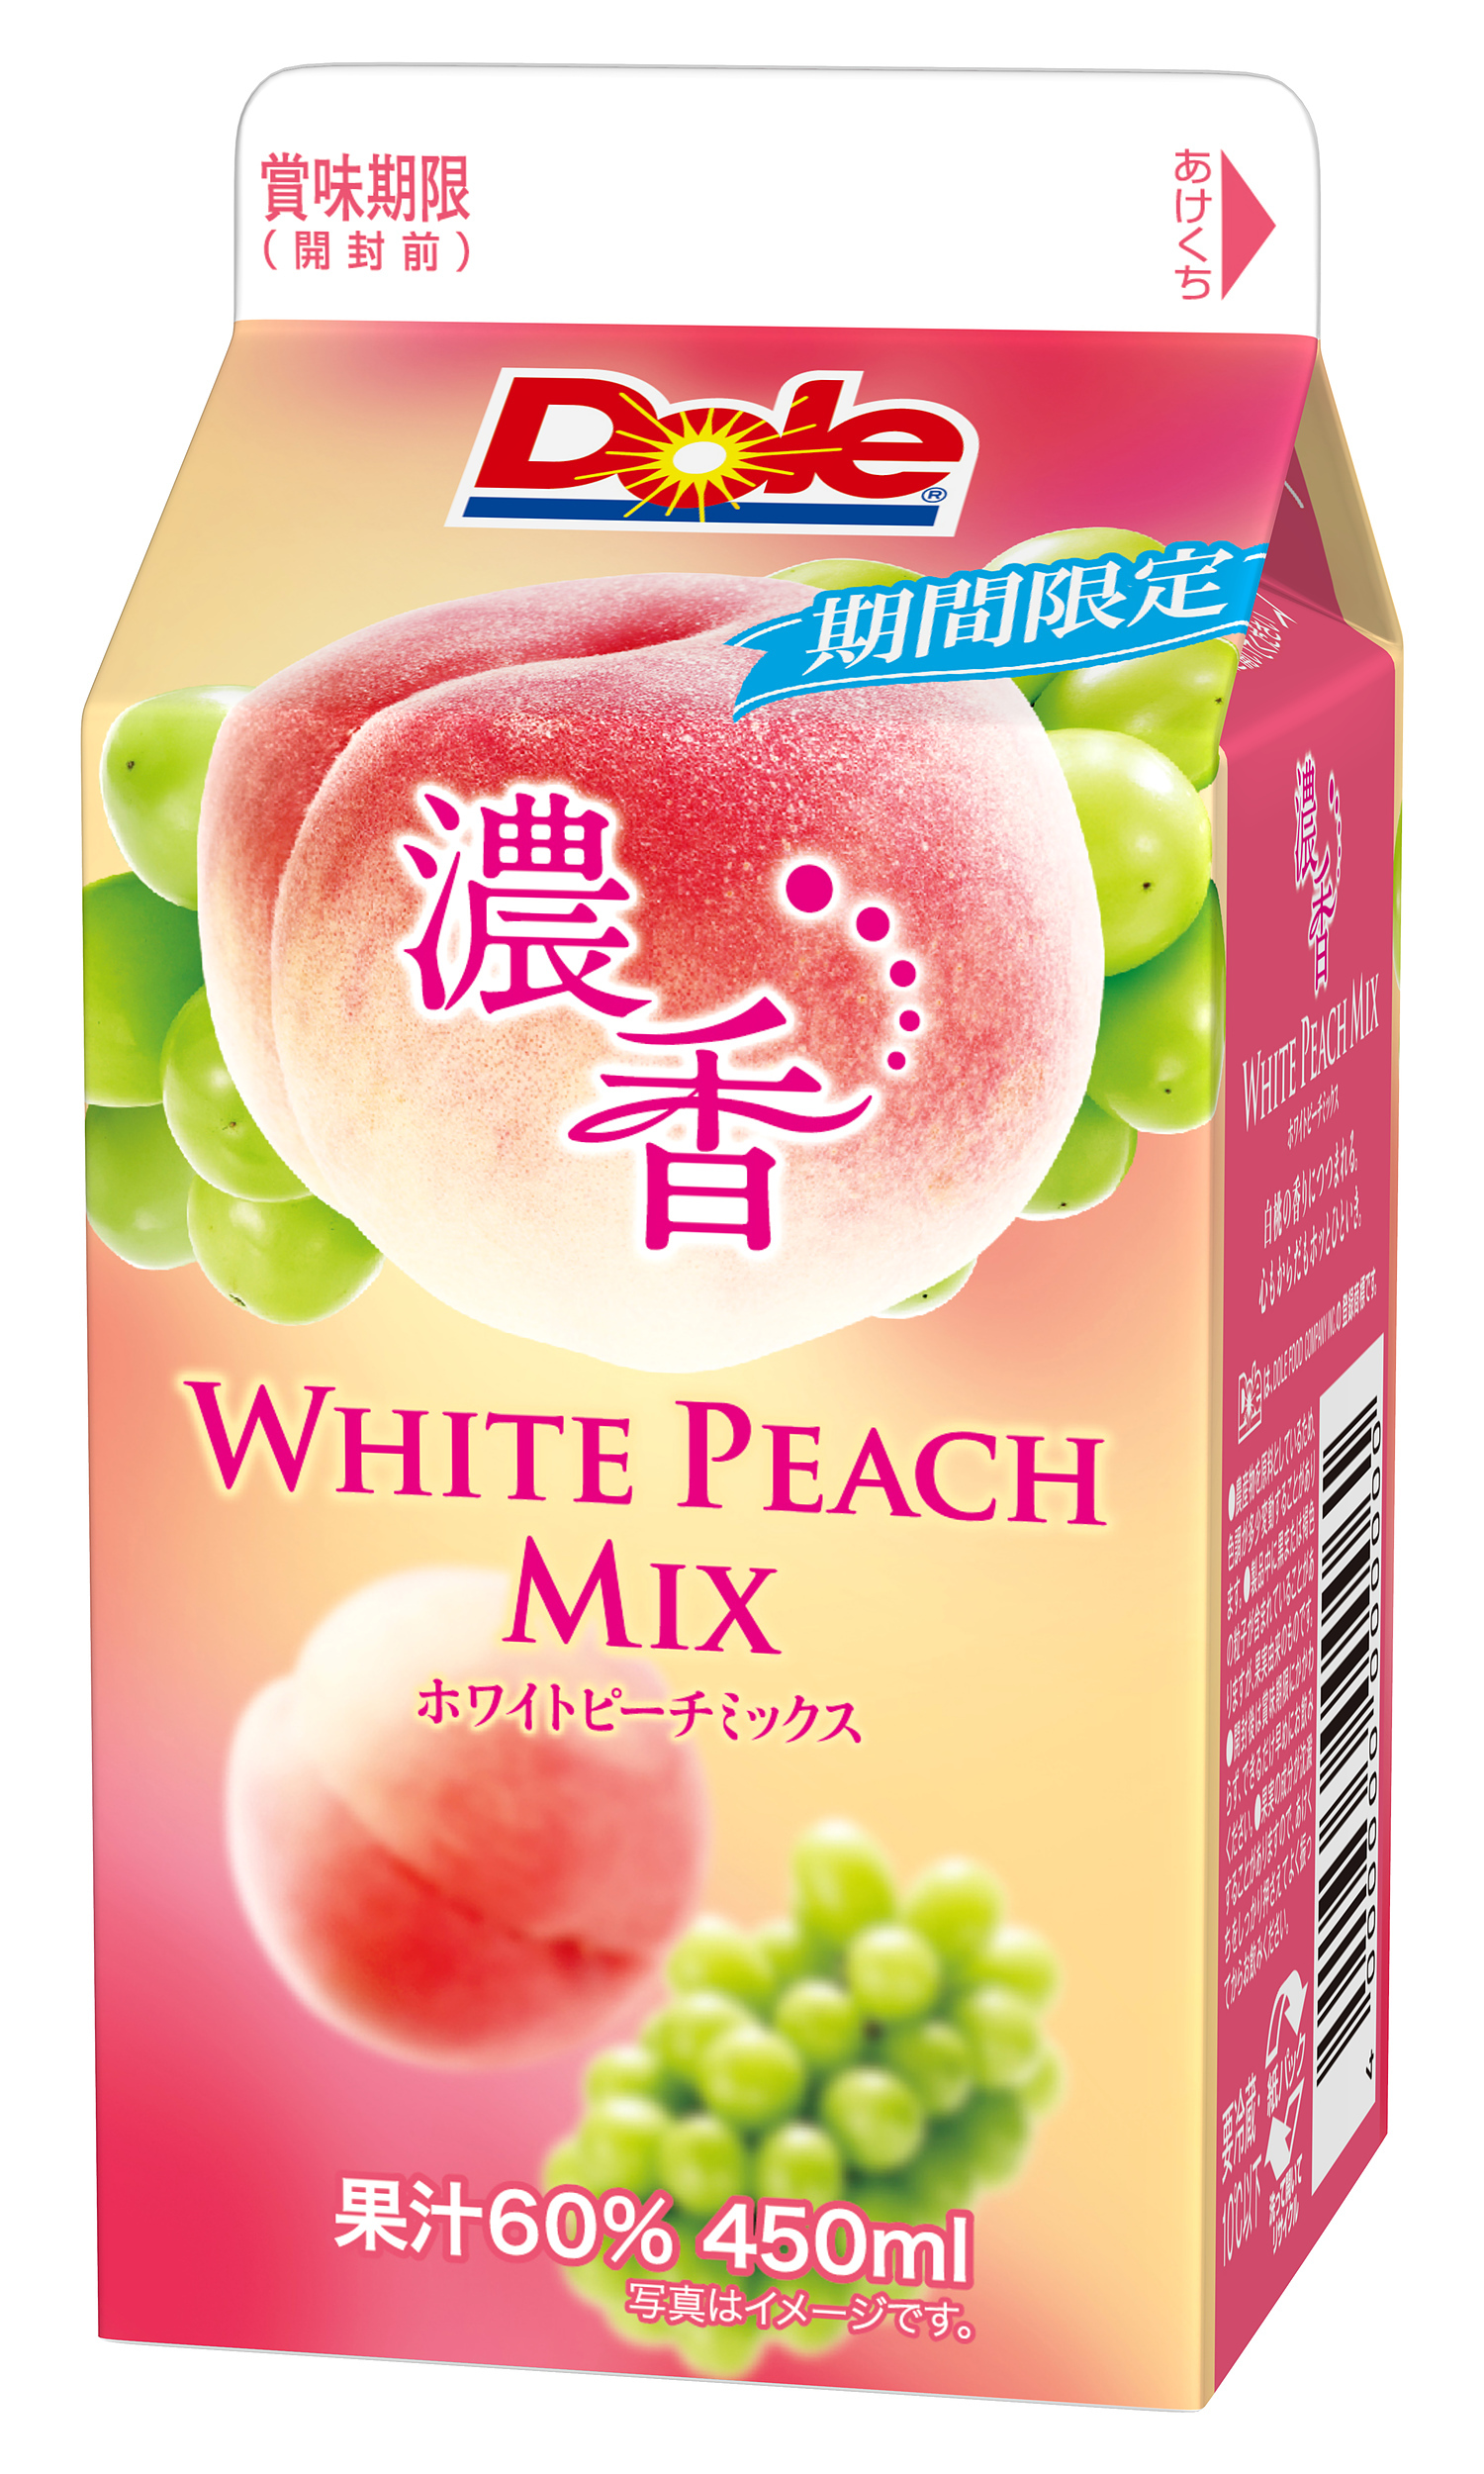 まるで本物の桃みたい🍑✨『Dole(R) 濃香 WHITE PEACH MIX』期間限定発売♡